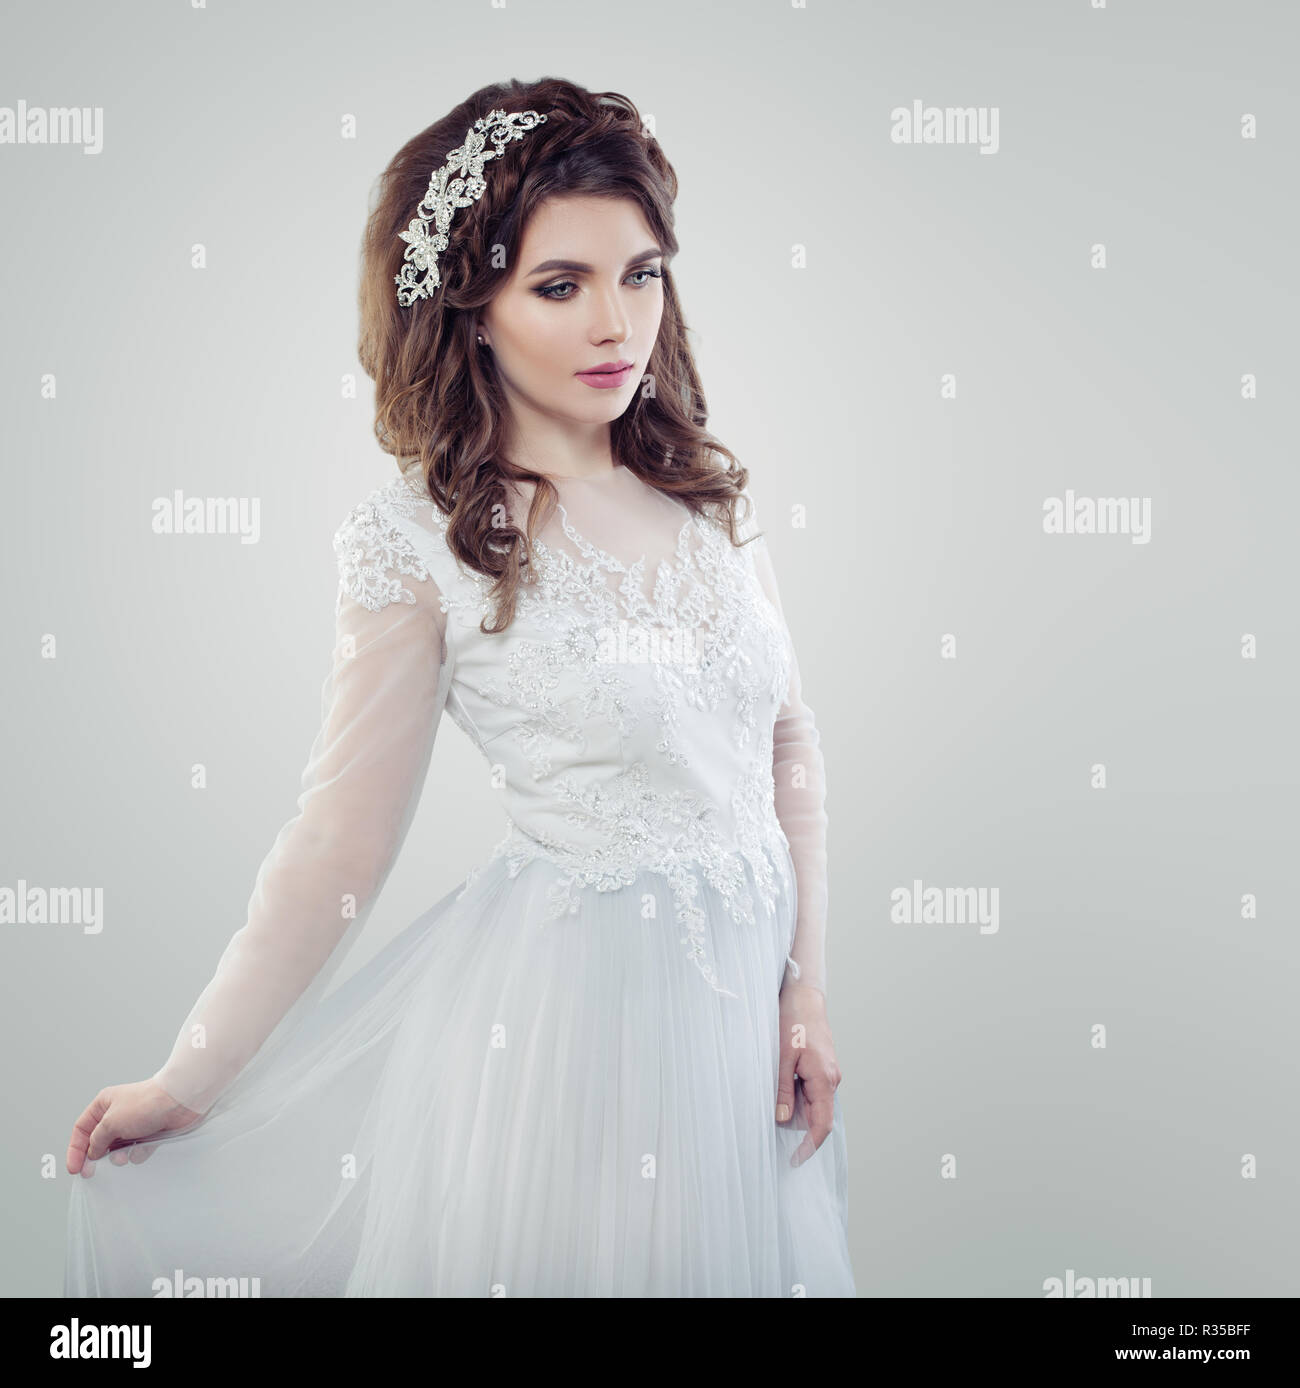 Belle mariée vogue girl portrait. Femme glamour en robe de mariage blanc  Photo Stock - Alamy